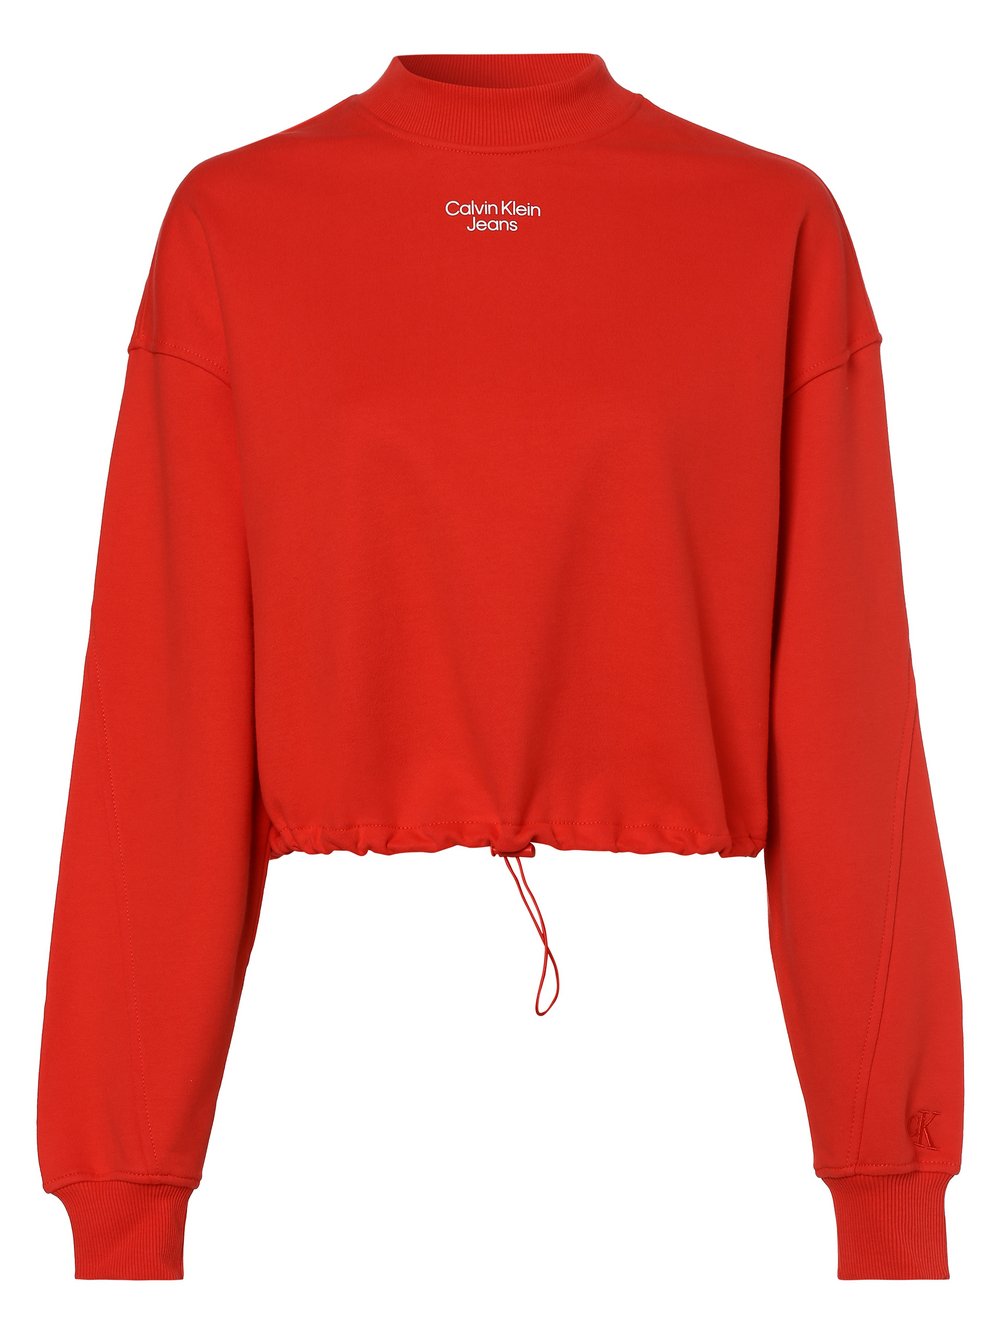 Calvin Klein Jeans - Damska bluza nierozpinana, czerwony